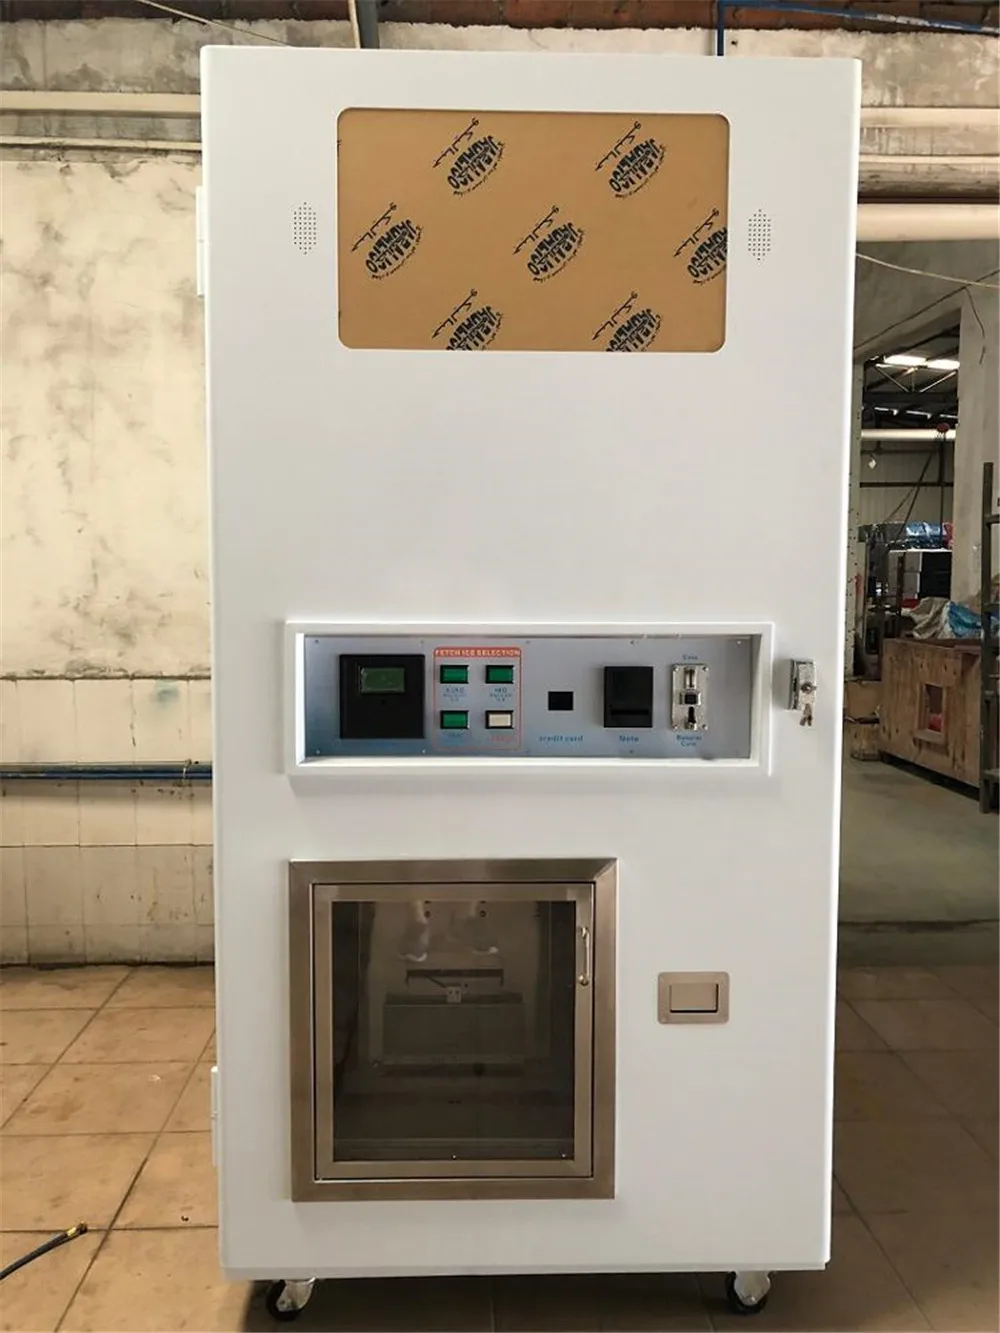 Коммерческий автомат по продаже льда весом 160 кг/день, автоматический автомат по продаже кубиков чистого льда